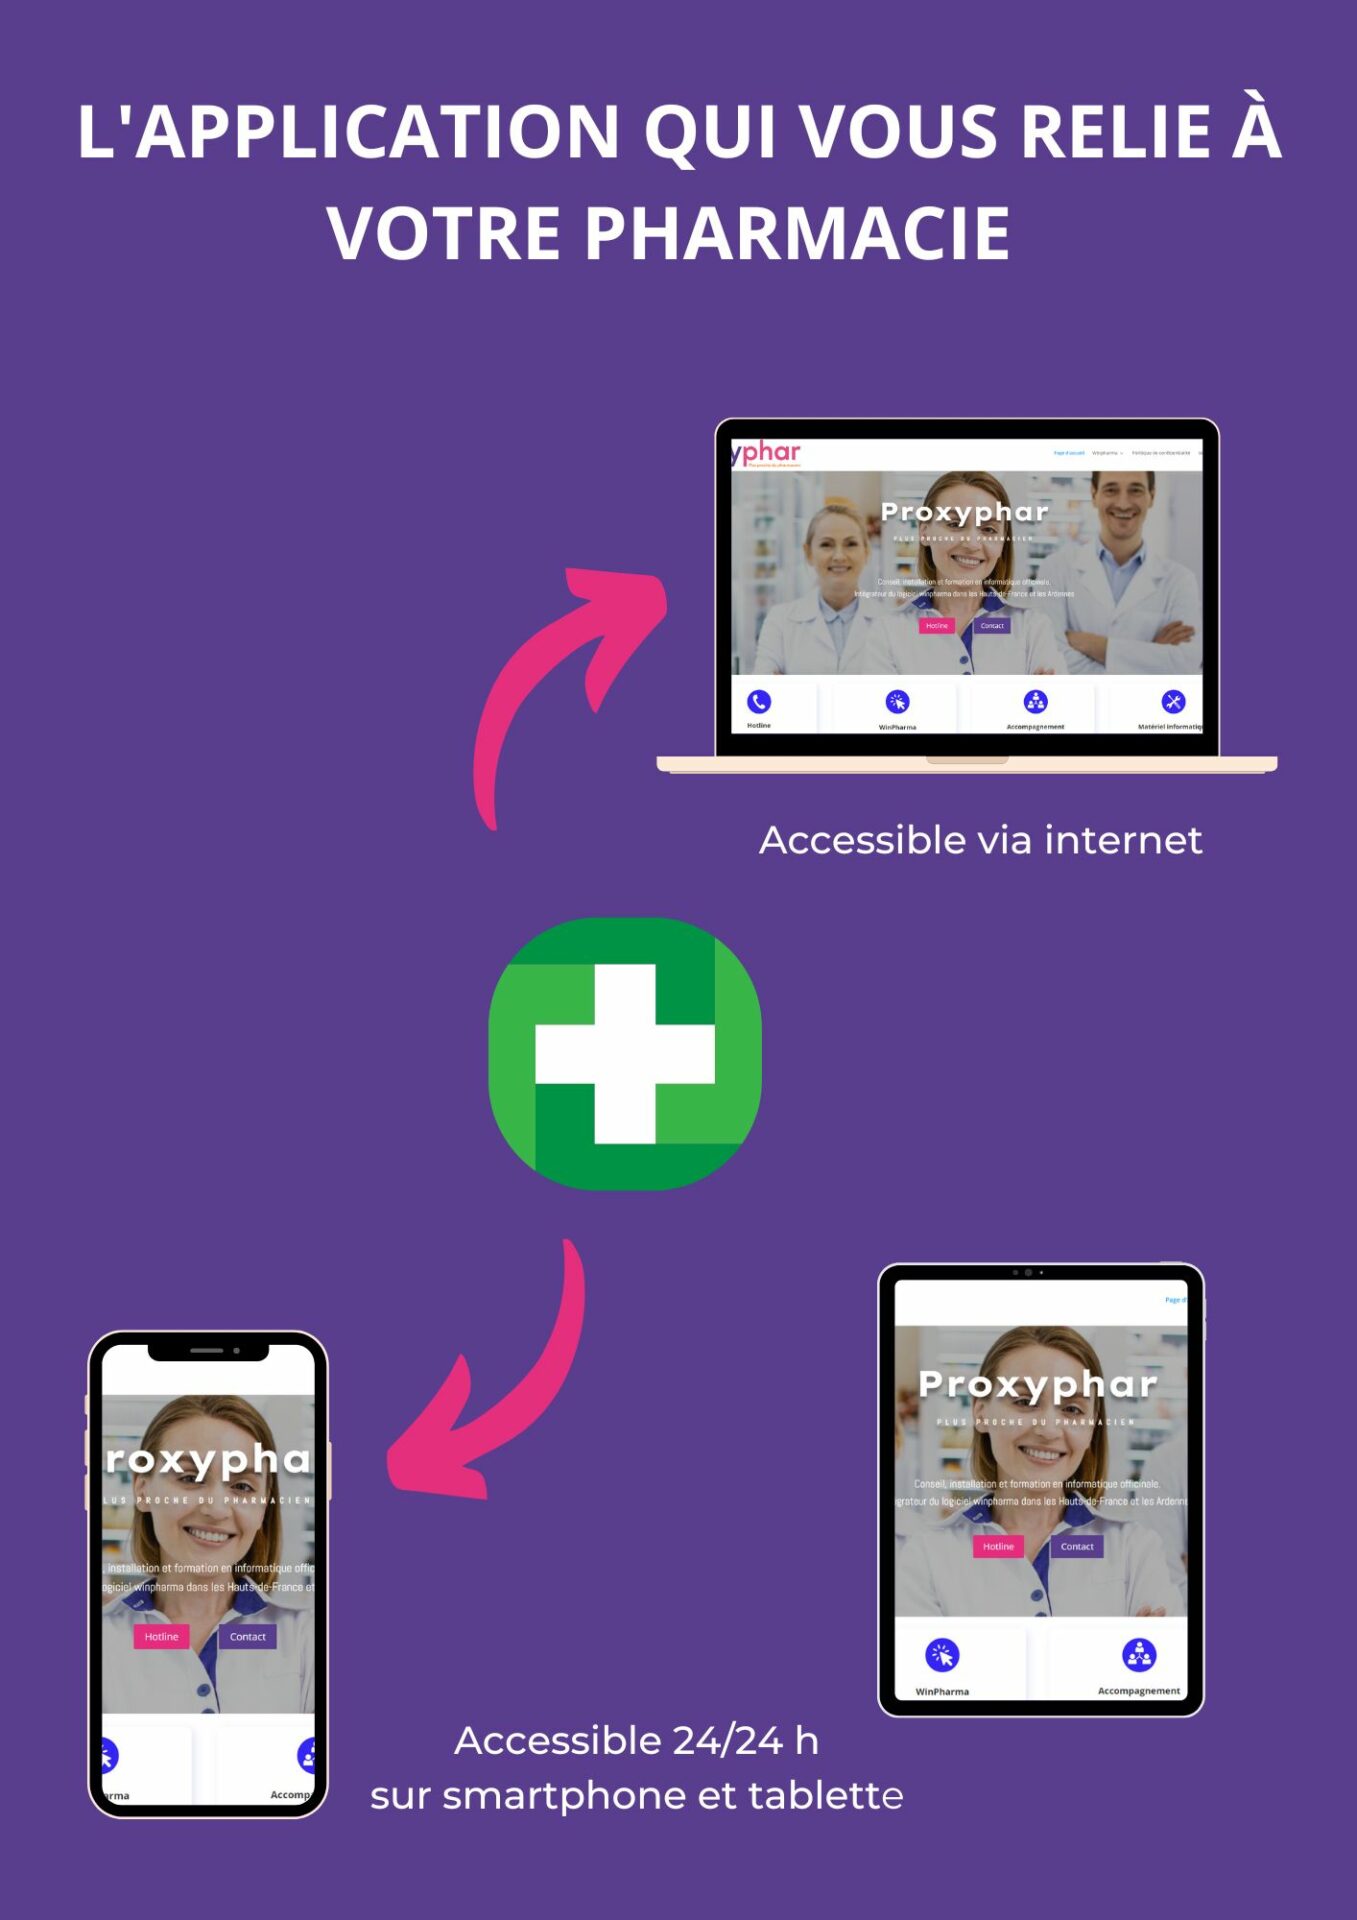 une photo écrit l'application winpharmacie qui vous relie à votre pharmacie, avec trois appareil (un ordinateur, un téléphone, et une tablette avec en fond le site internet de proxyphar) au milieu le logo pharmacie